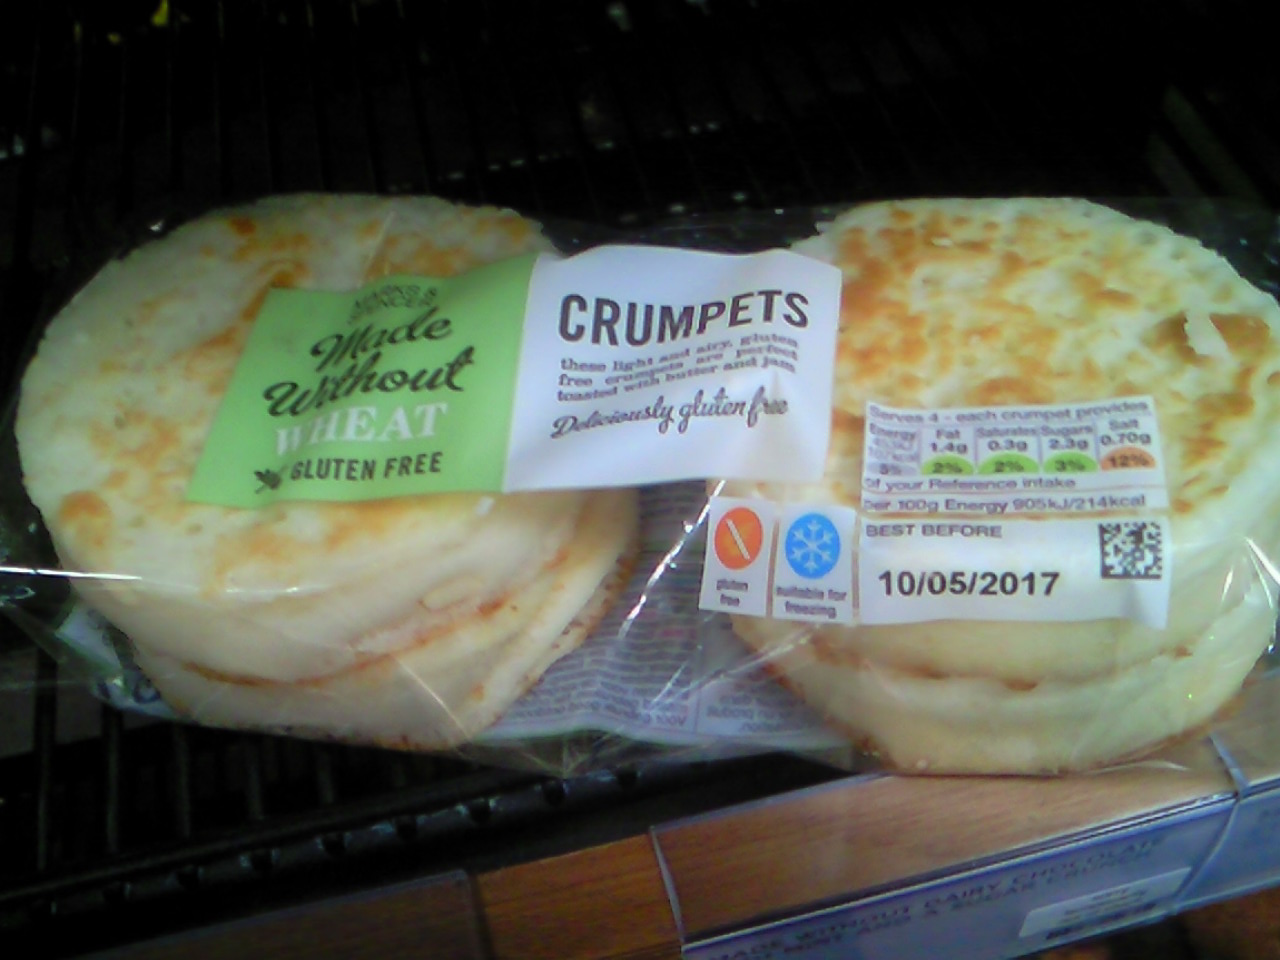 ｸﾗﾝﾍﾟｯﾄ Crumpet ﾎｯﾄｸﾛｽﾊﾞﾝ Hot Cross Bun ﾛﾝﾄﾞﾝ 穴場 ﾀﾀﾞｶﾞｲﾄﾞ写真編 London Photo Guide Blog Nemi